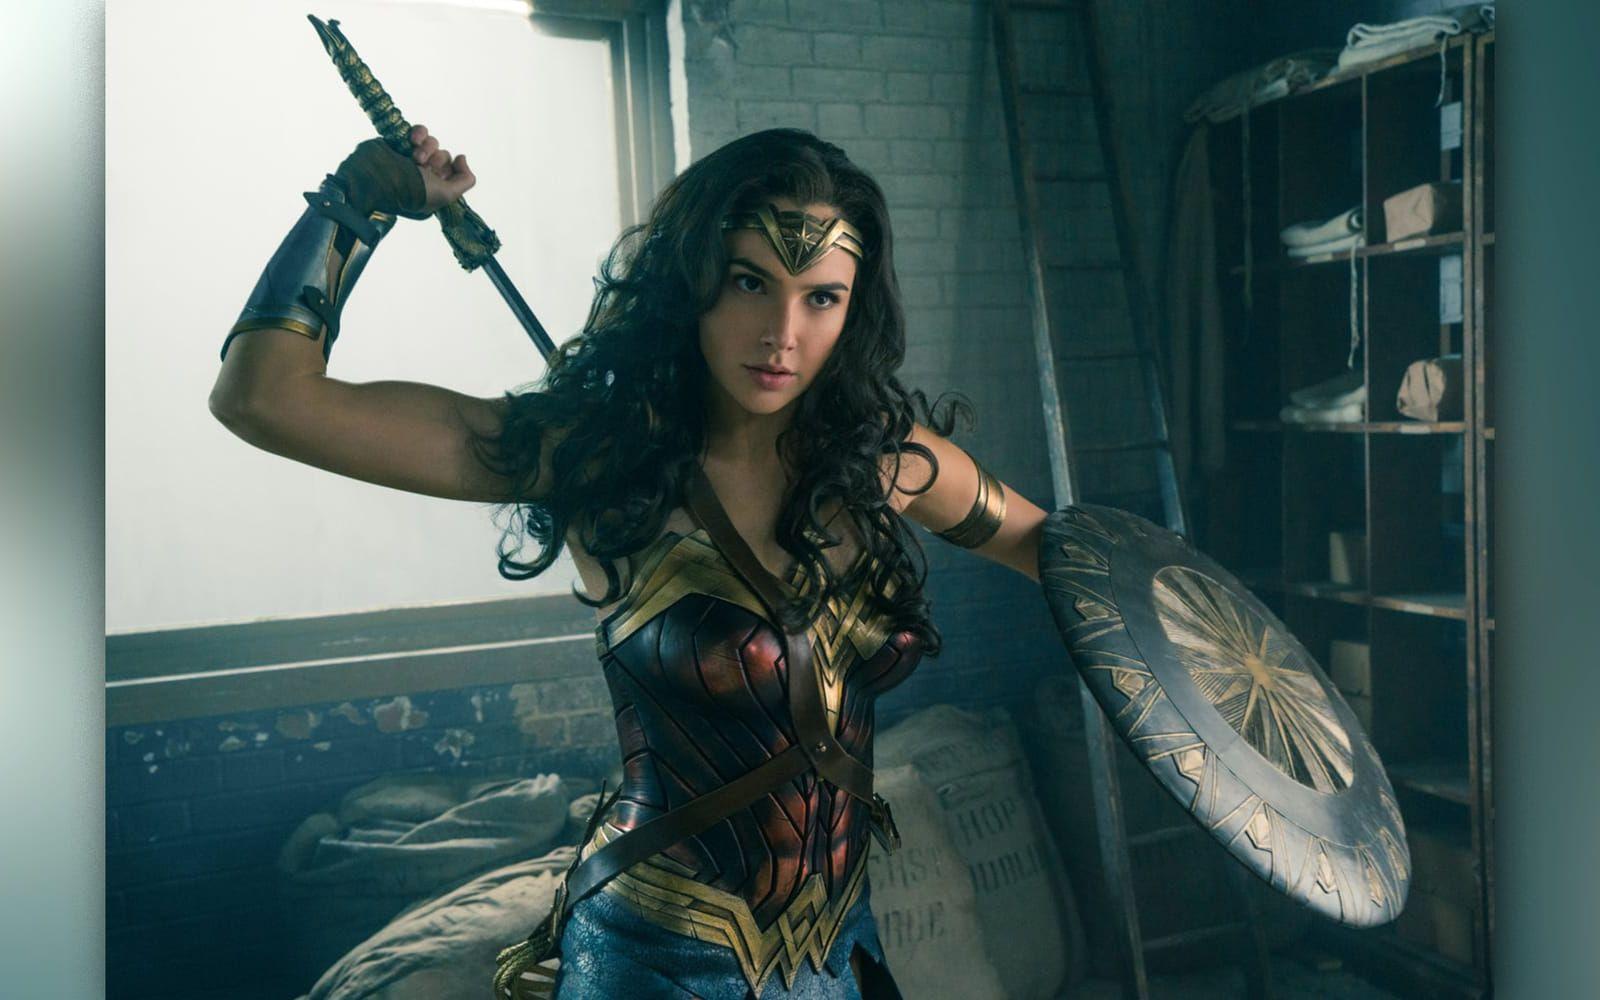 <strong>Wonder Woman. </strong>Ännu en DC-hjälte når vita duken. Ska Marvel-konkurrenten träffa rätt eller blir det ett platt fall? I juni vet vi (23 juni). Förväntningar: 2/5.